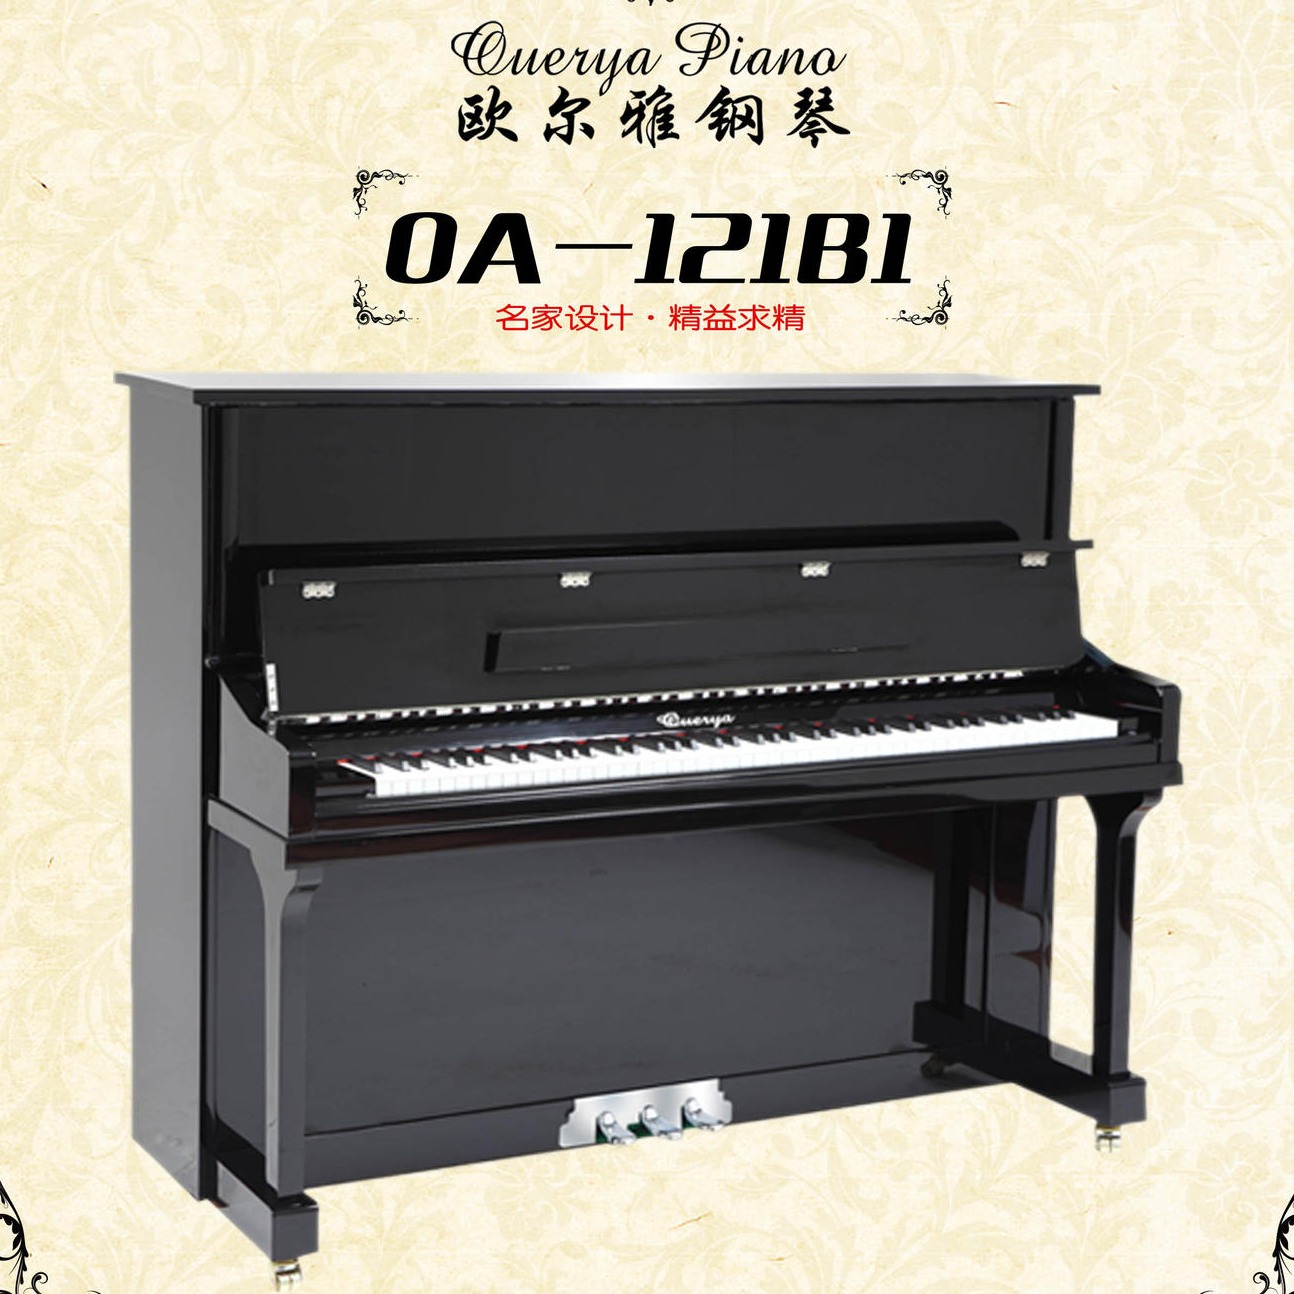 是教学钢琴？欧尔雅OA-121B1教学专用钢琴